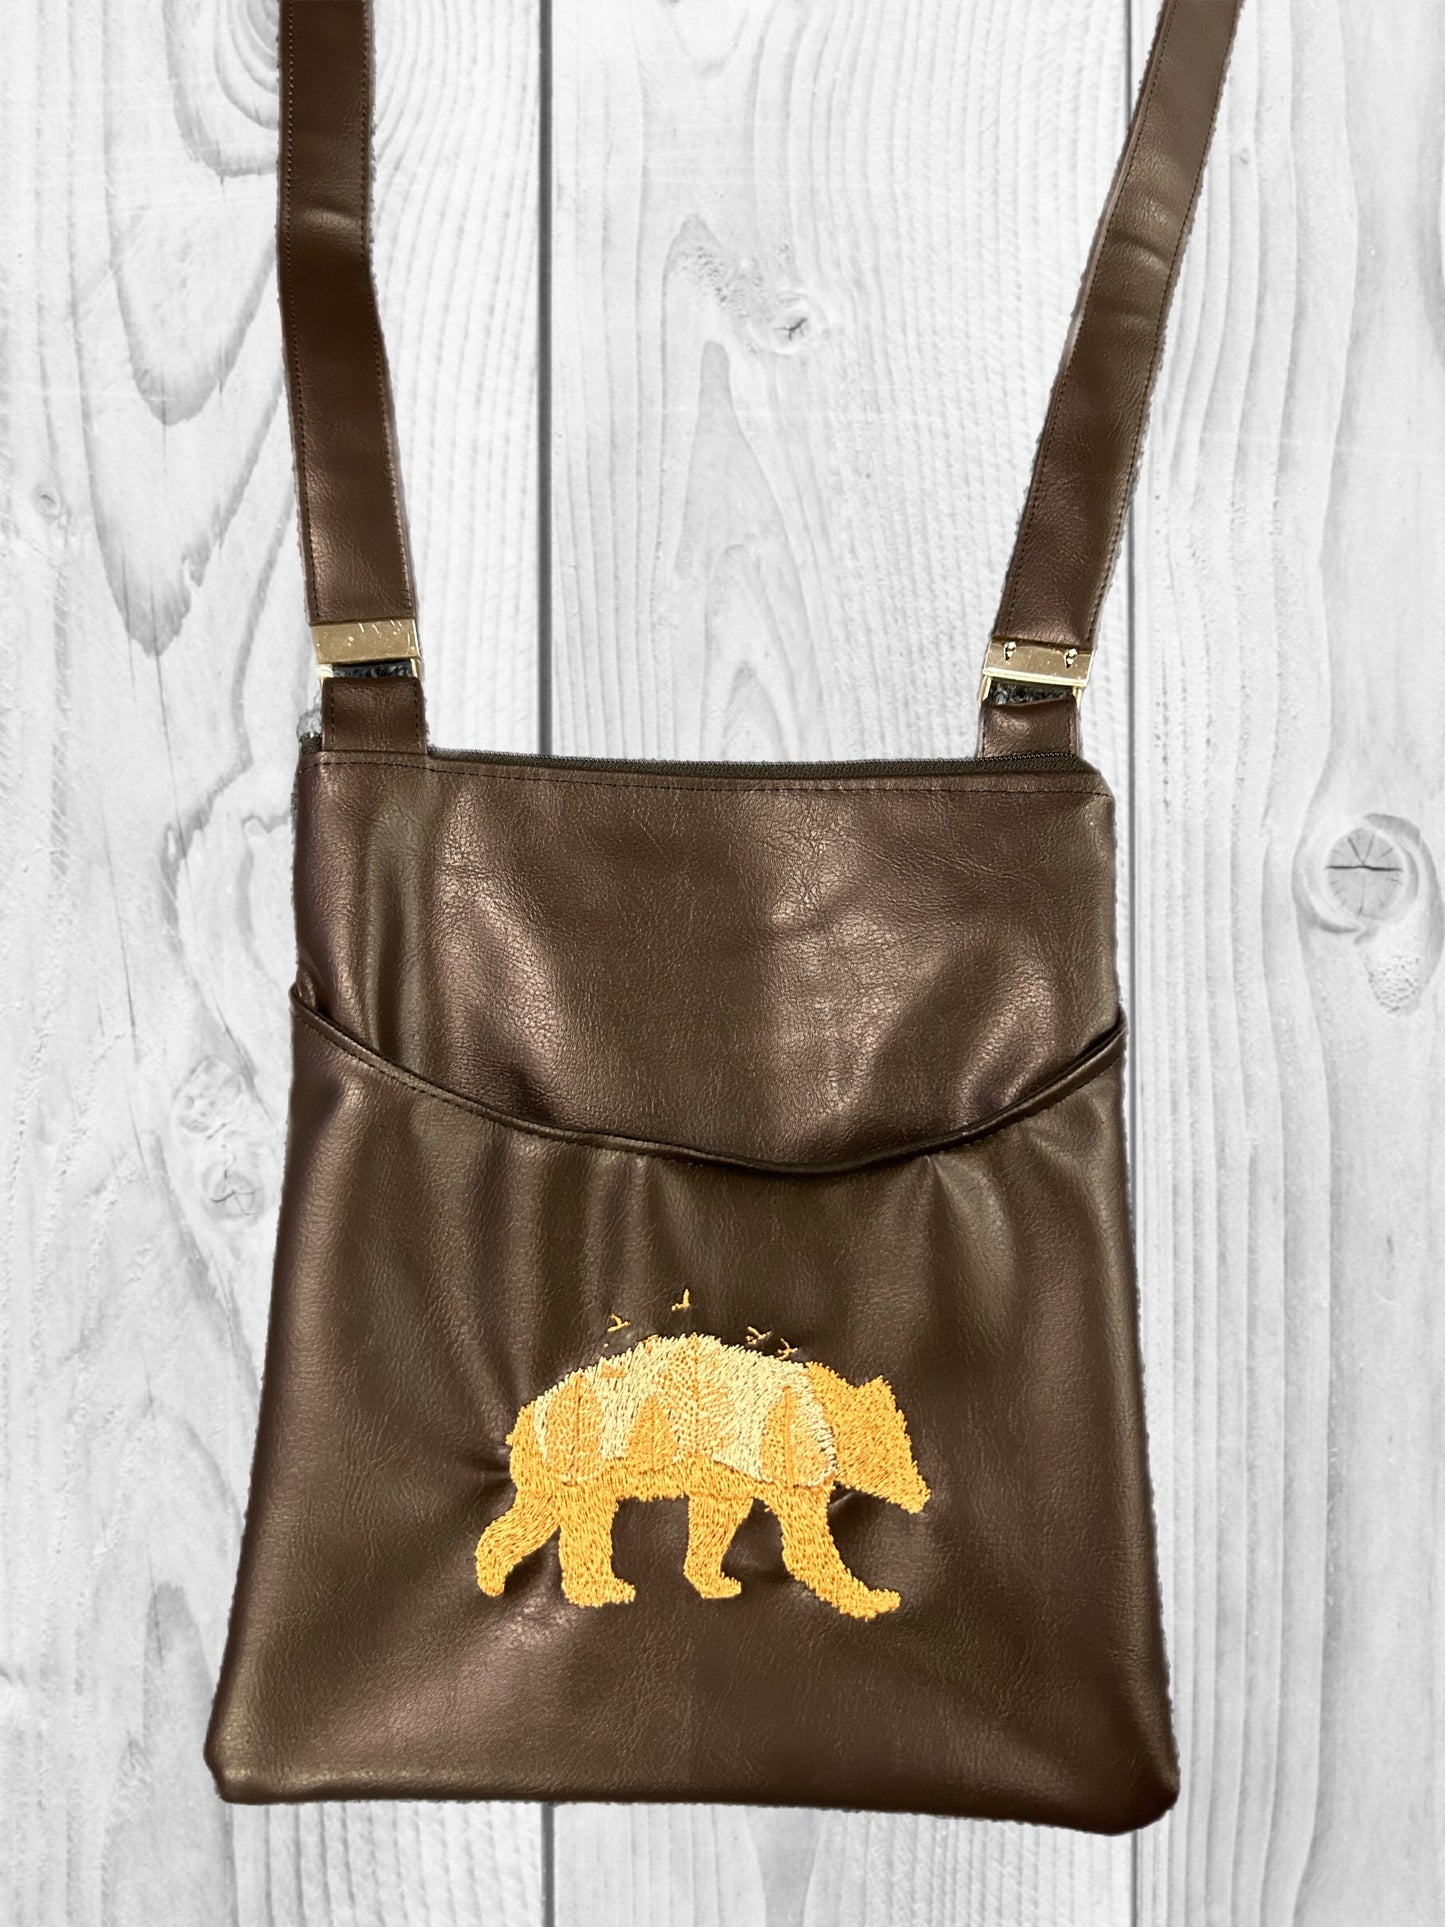 Bear Teeny Tiny Bag